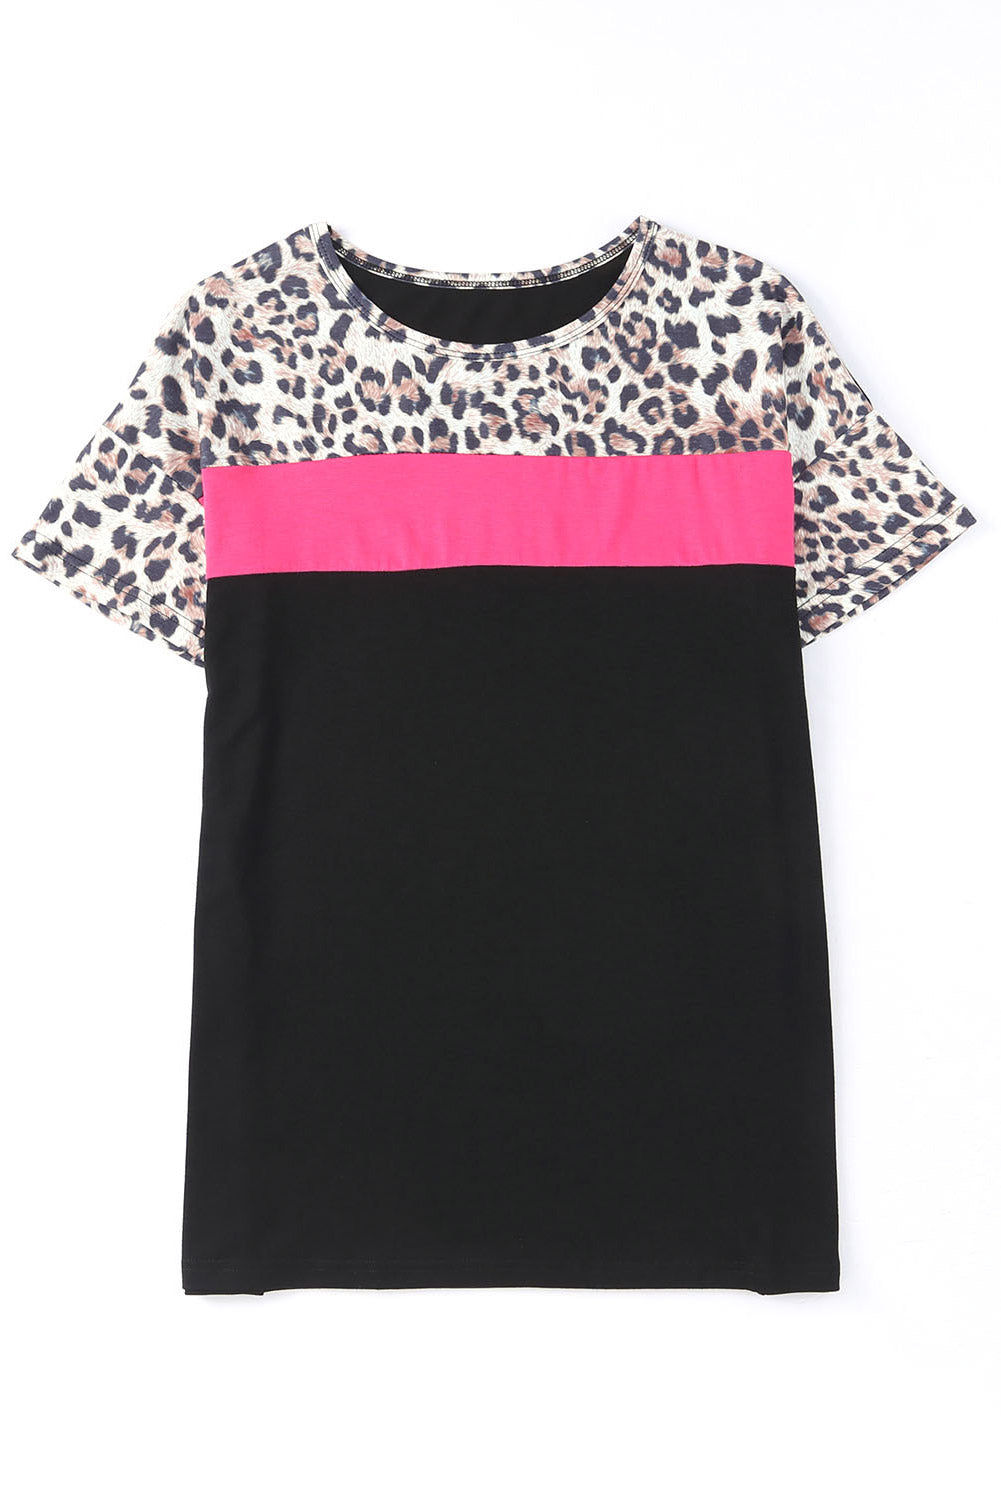 Black Casual Leopard Colorblock Splicing T-Shirt